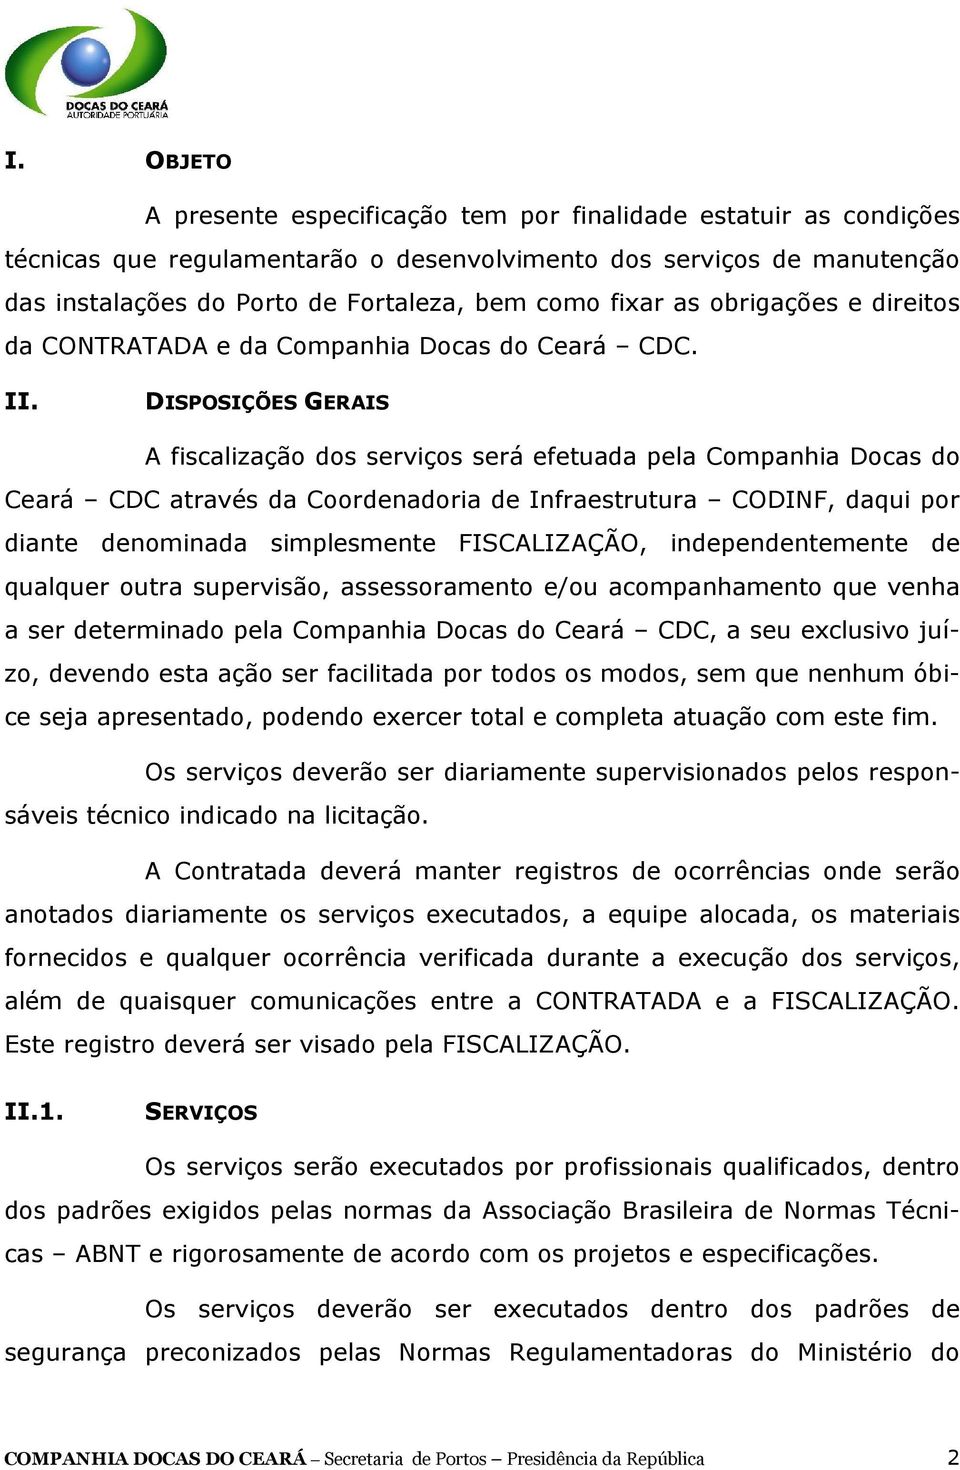 DISPOSIÇÕES GERAIS A fiscalização dos serviços será efetuada pela Companhia Docas do Ceará CDC através da Coordenadoria de Infraestrutura CODINF, daqui por diante denominada simplesmente